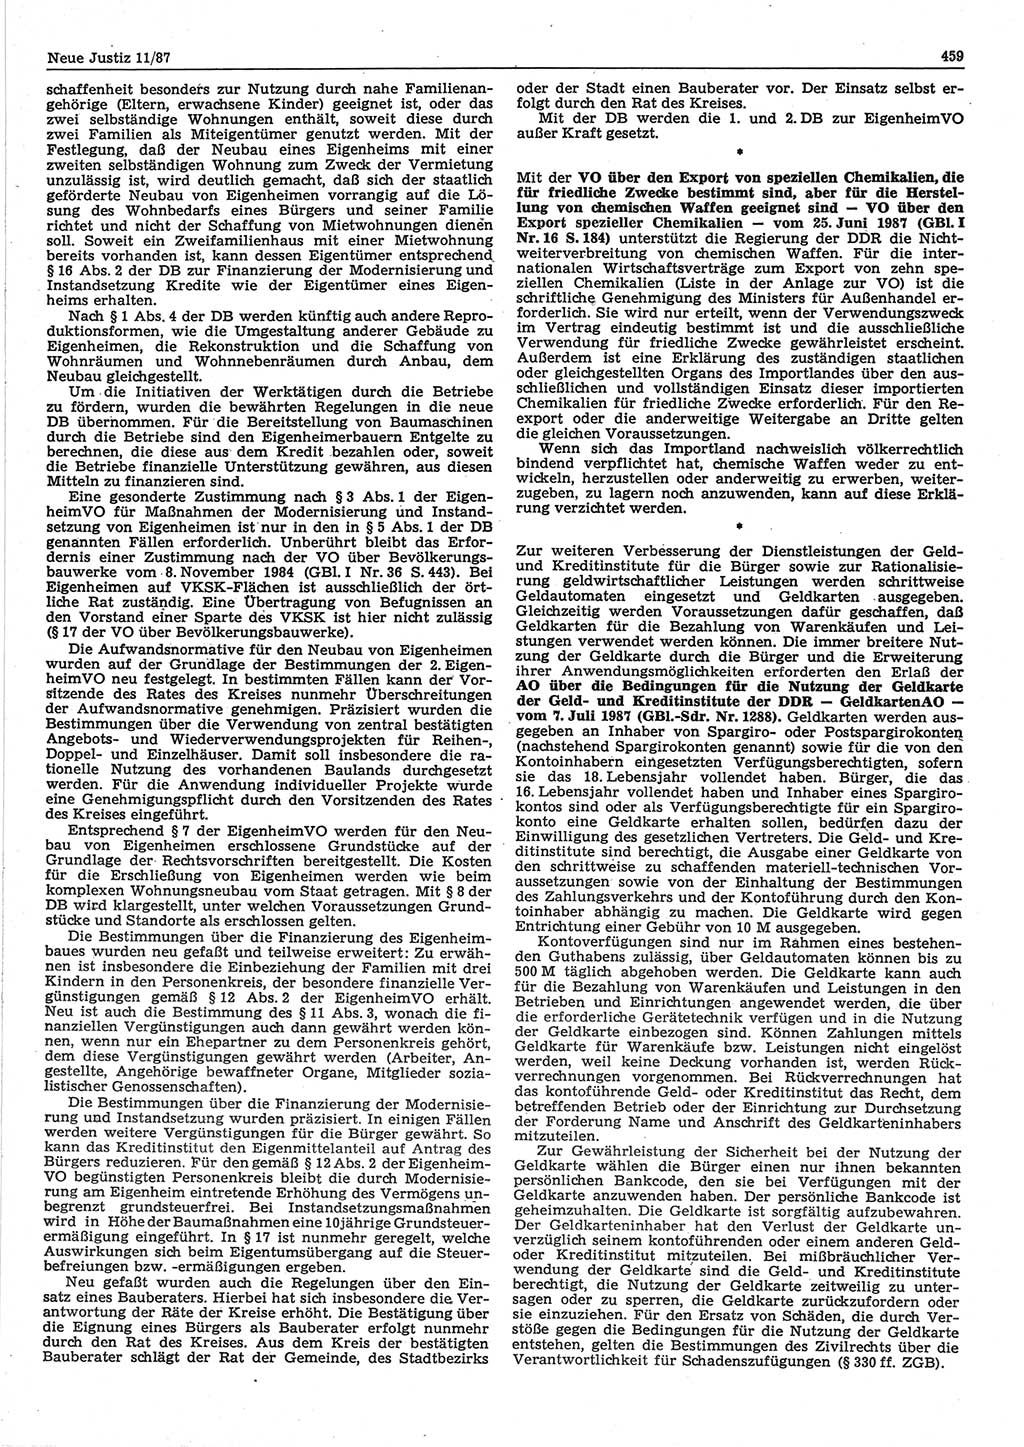 Neue Justiz (NJ), Zeitschrift für sozialistisches Recht und Gesetzlichkeit [Deutsche Demokratische Republik (DDR)], 41. Jahrgang 1987, Seite 459 (NJ DDR 1987, S. 459)